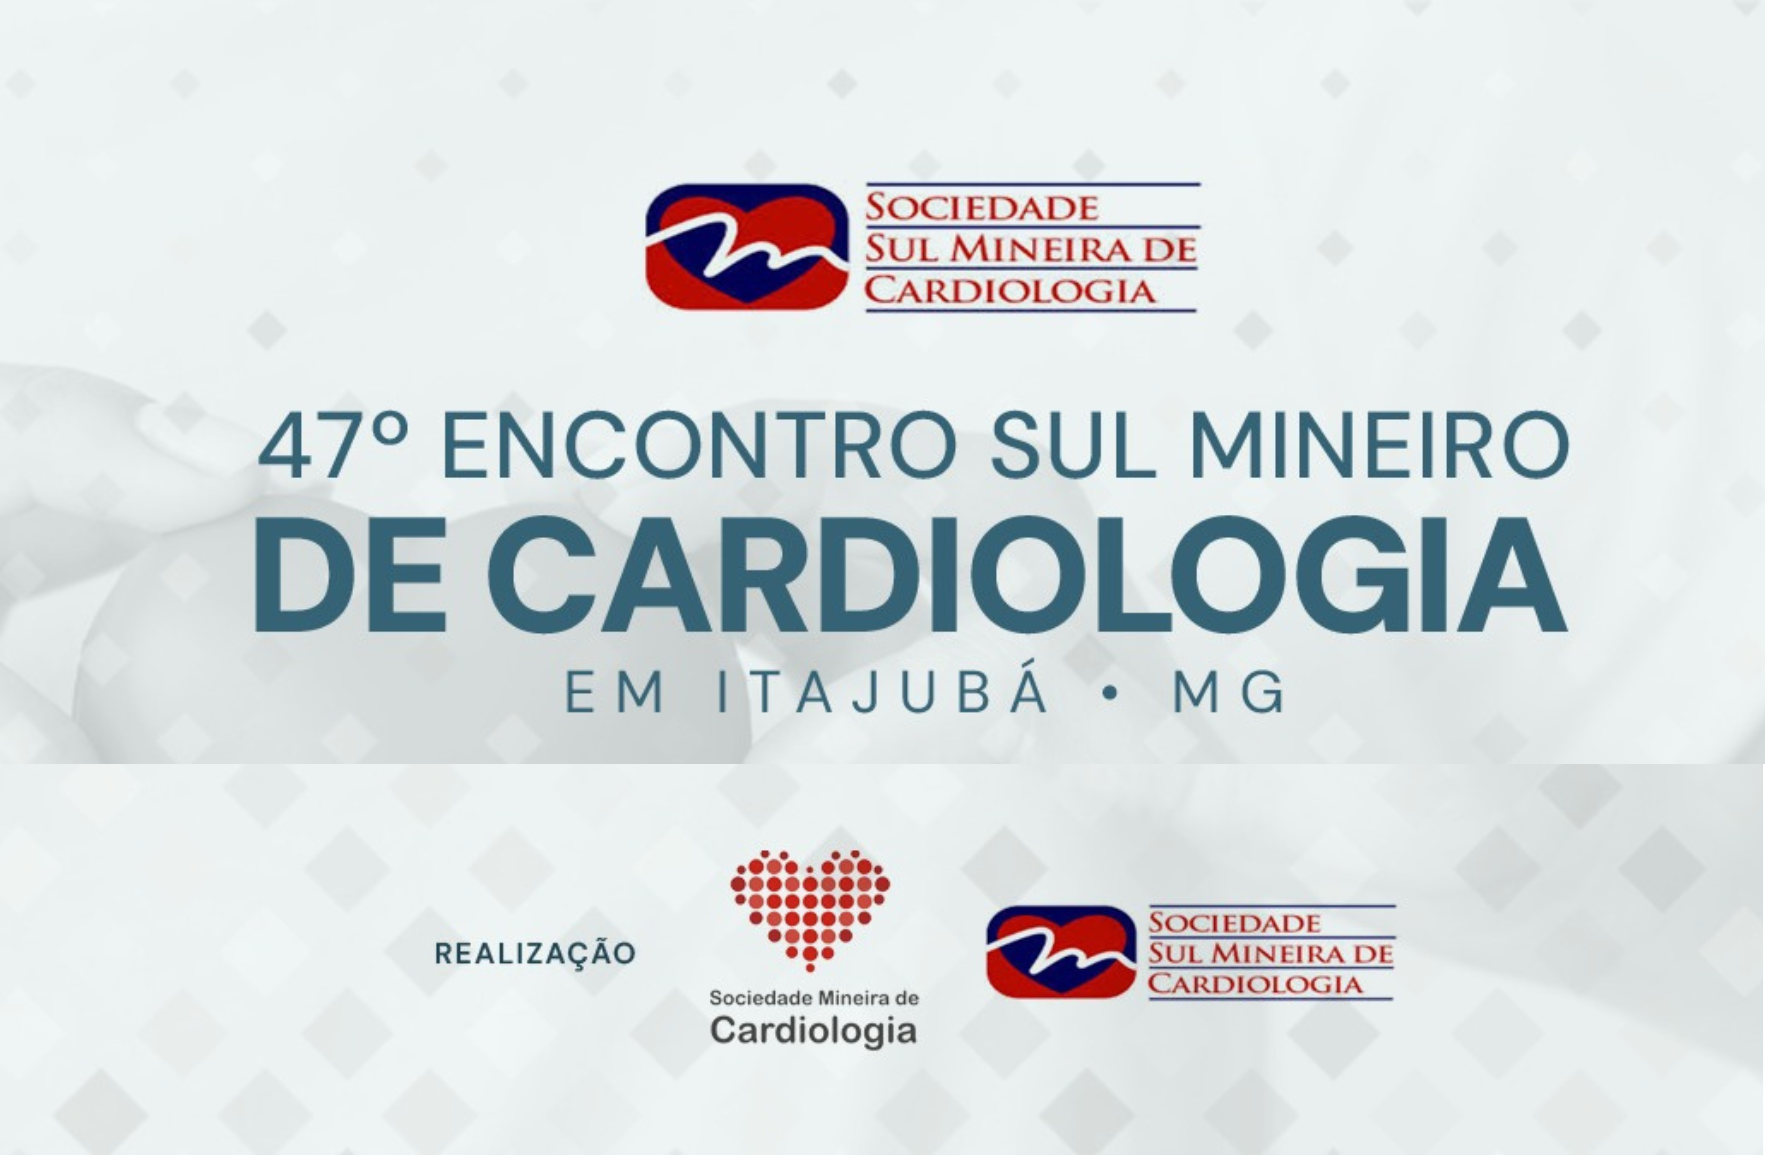 Sociedade Mineira de Cardiologia